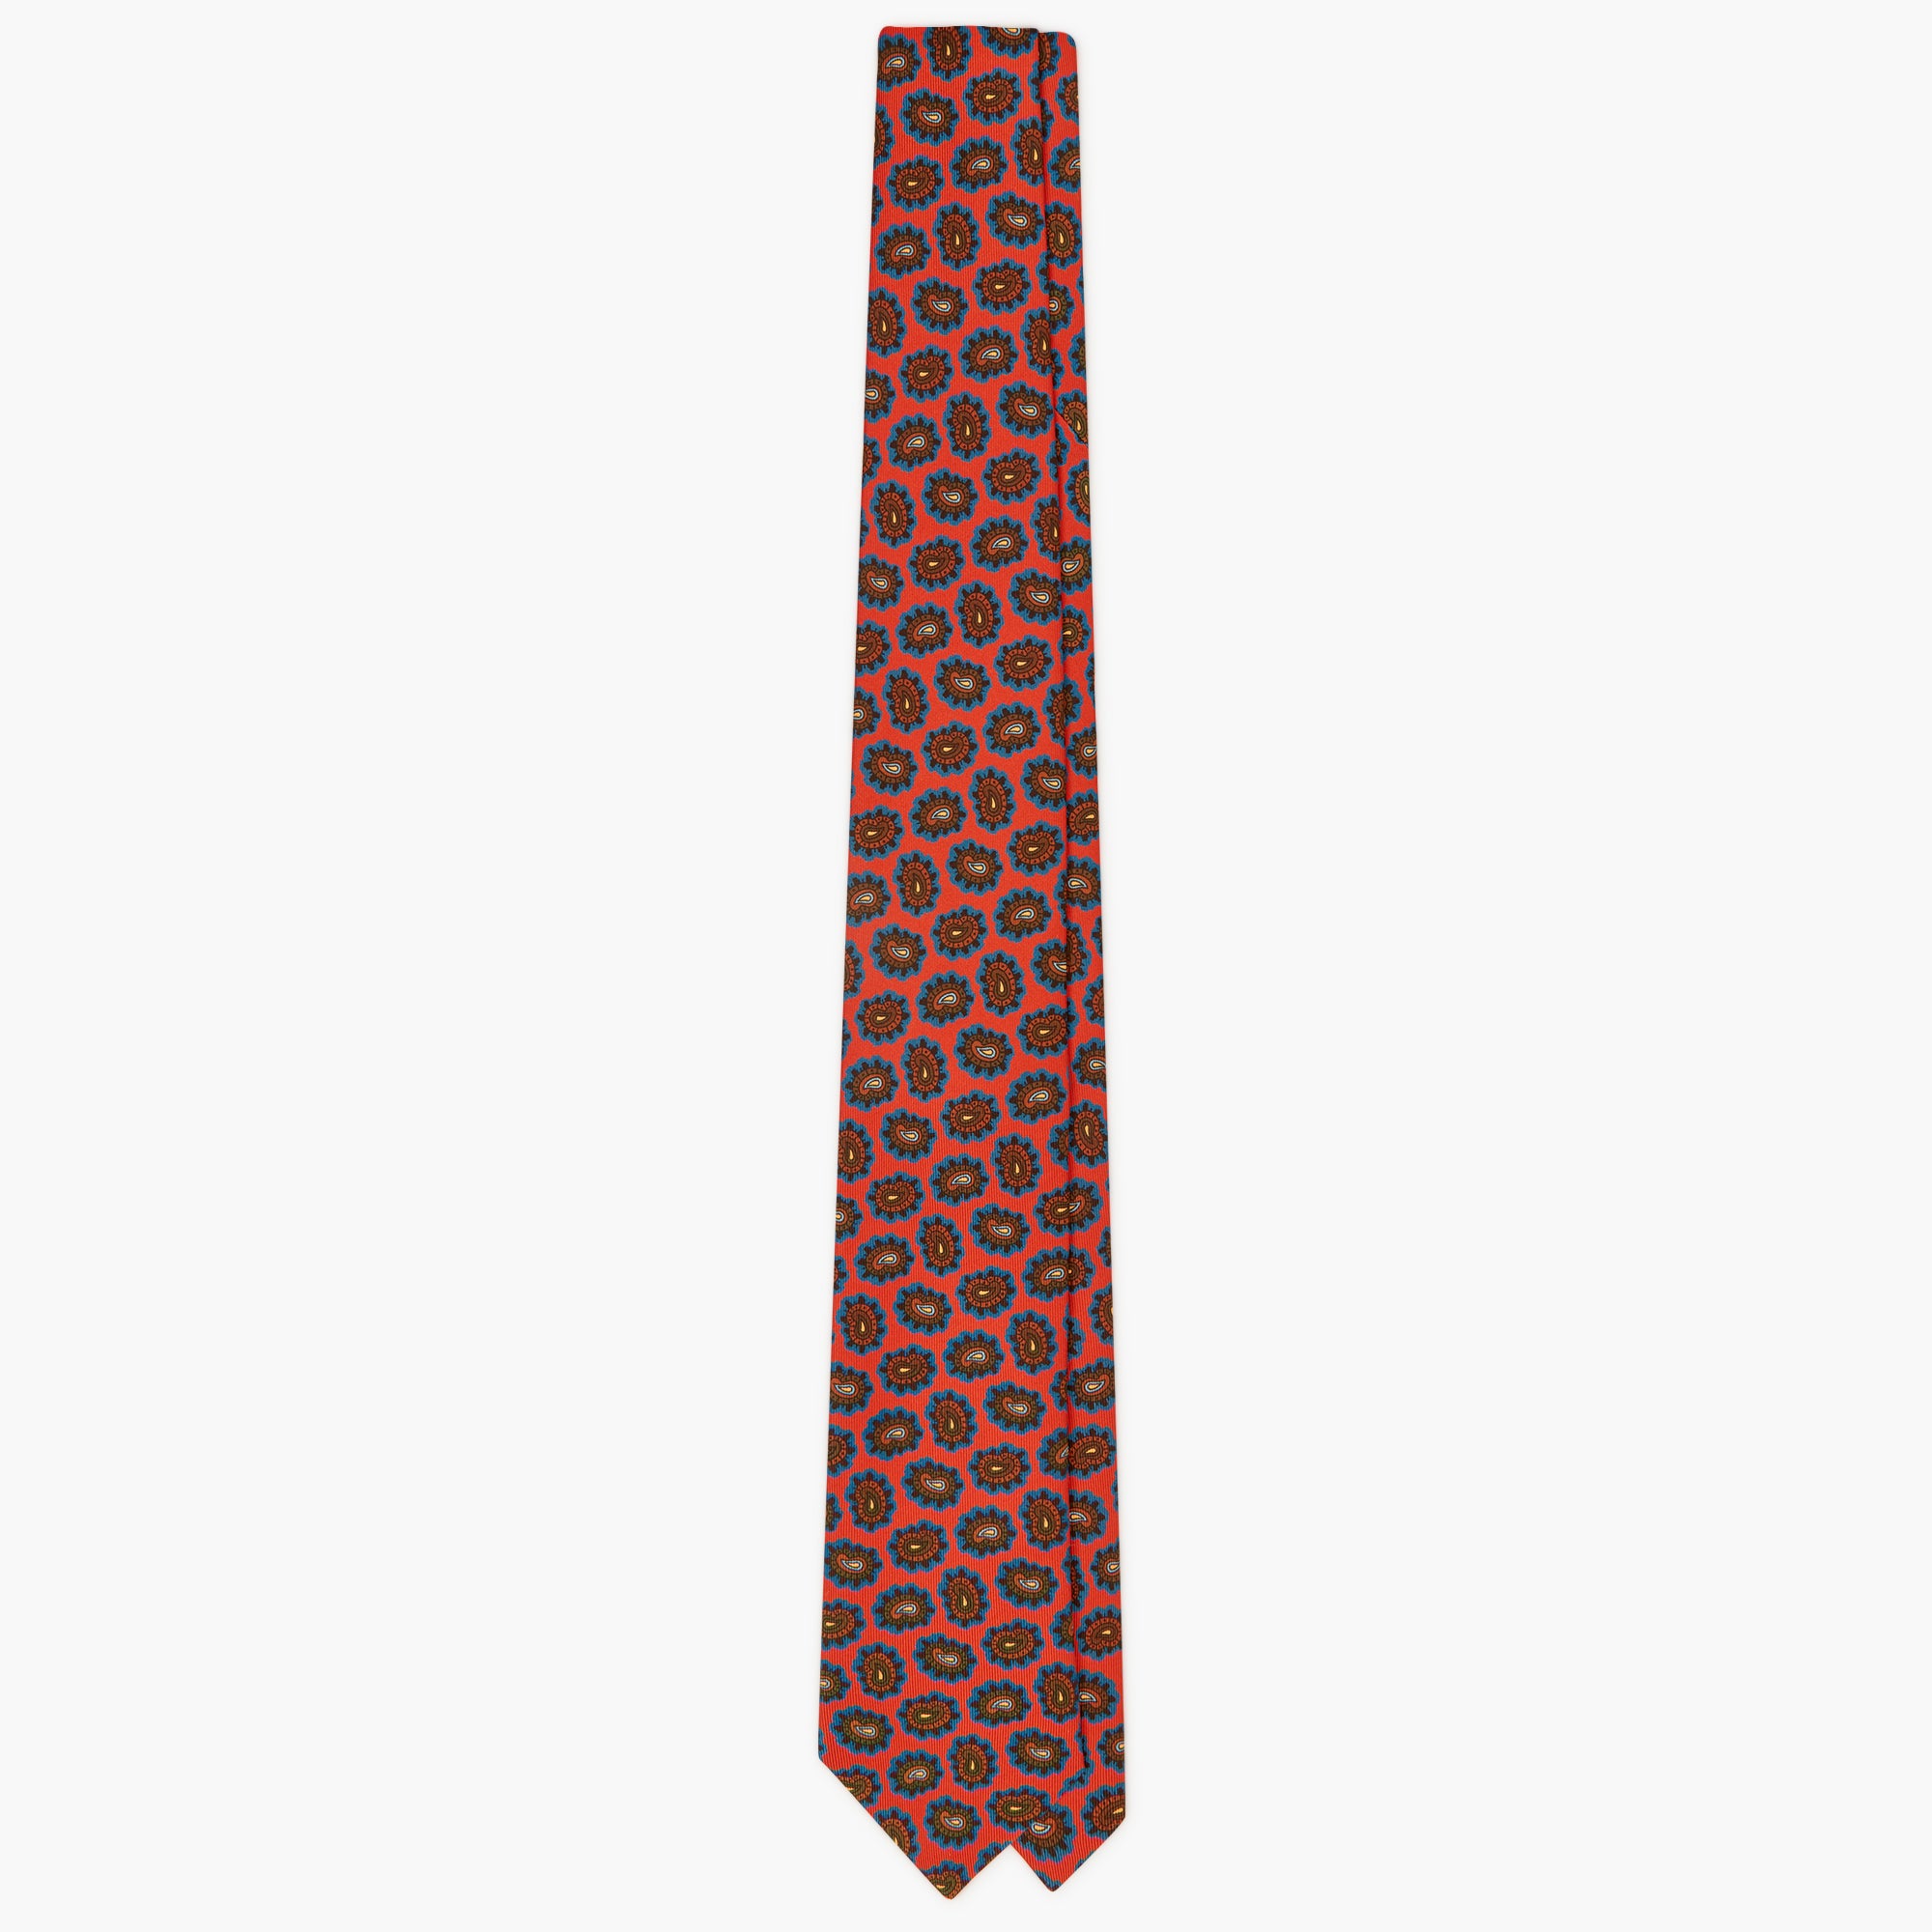 3-Fold Paisley Printed Italian Silk Tie - Red